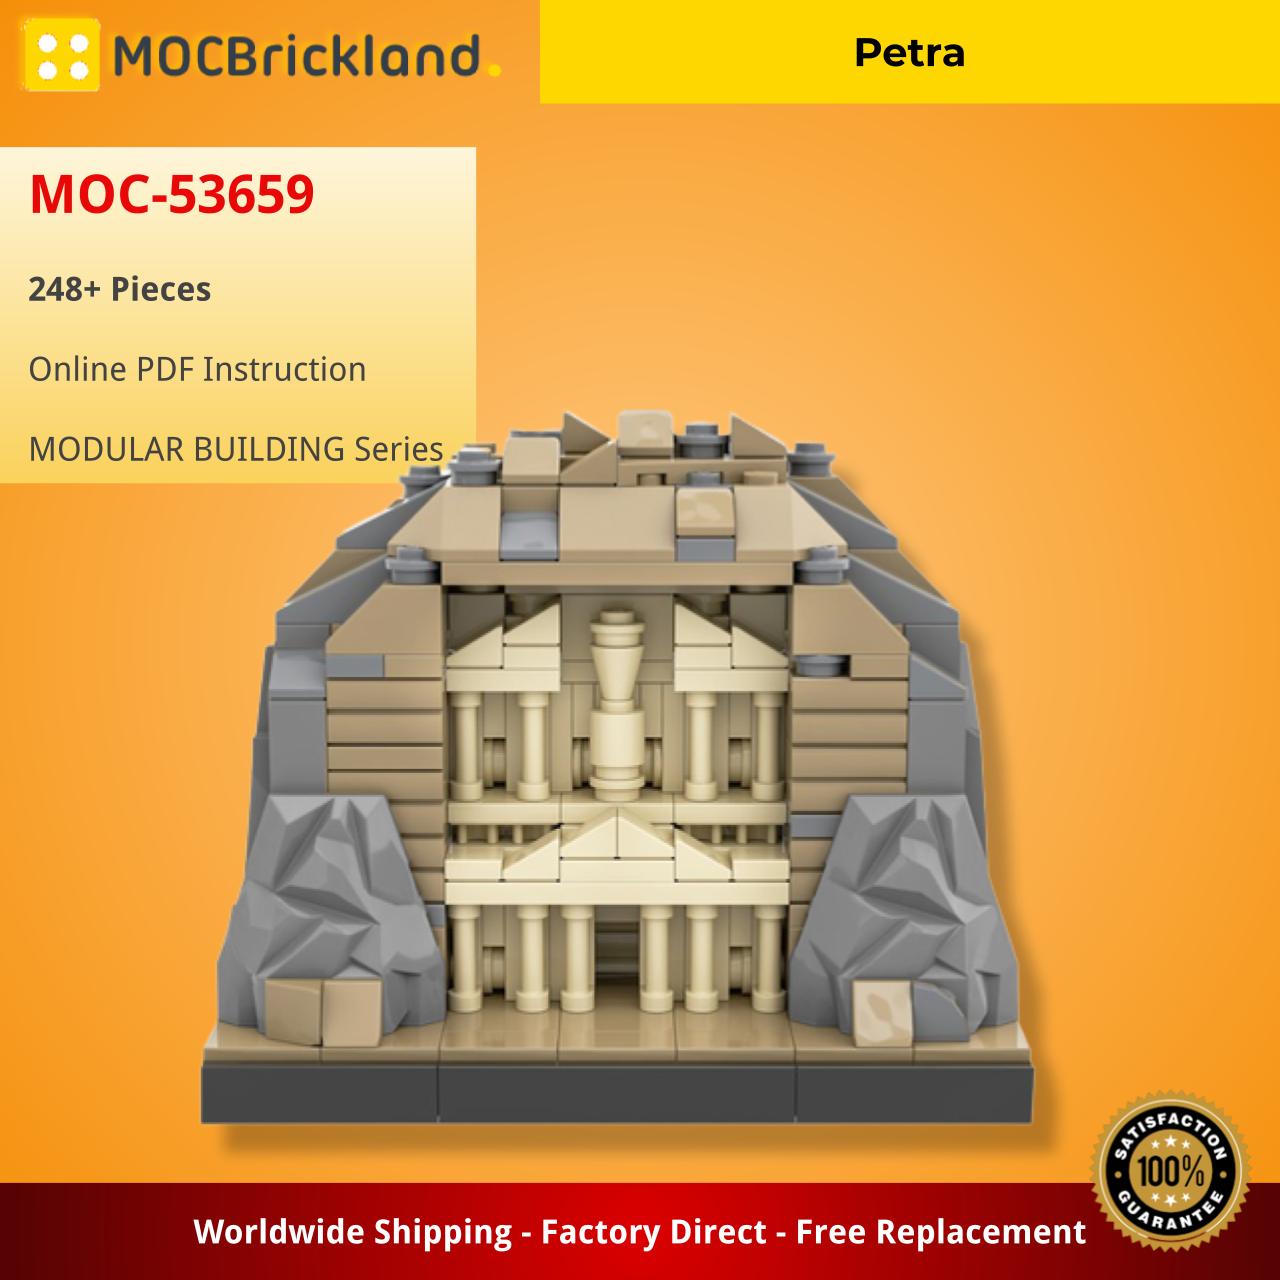 Petra MODULAR BUILDING MOC-53659 WITH 248 PIECES